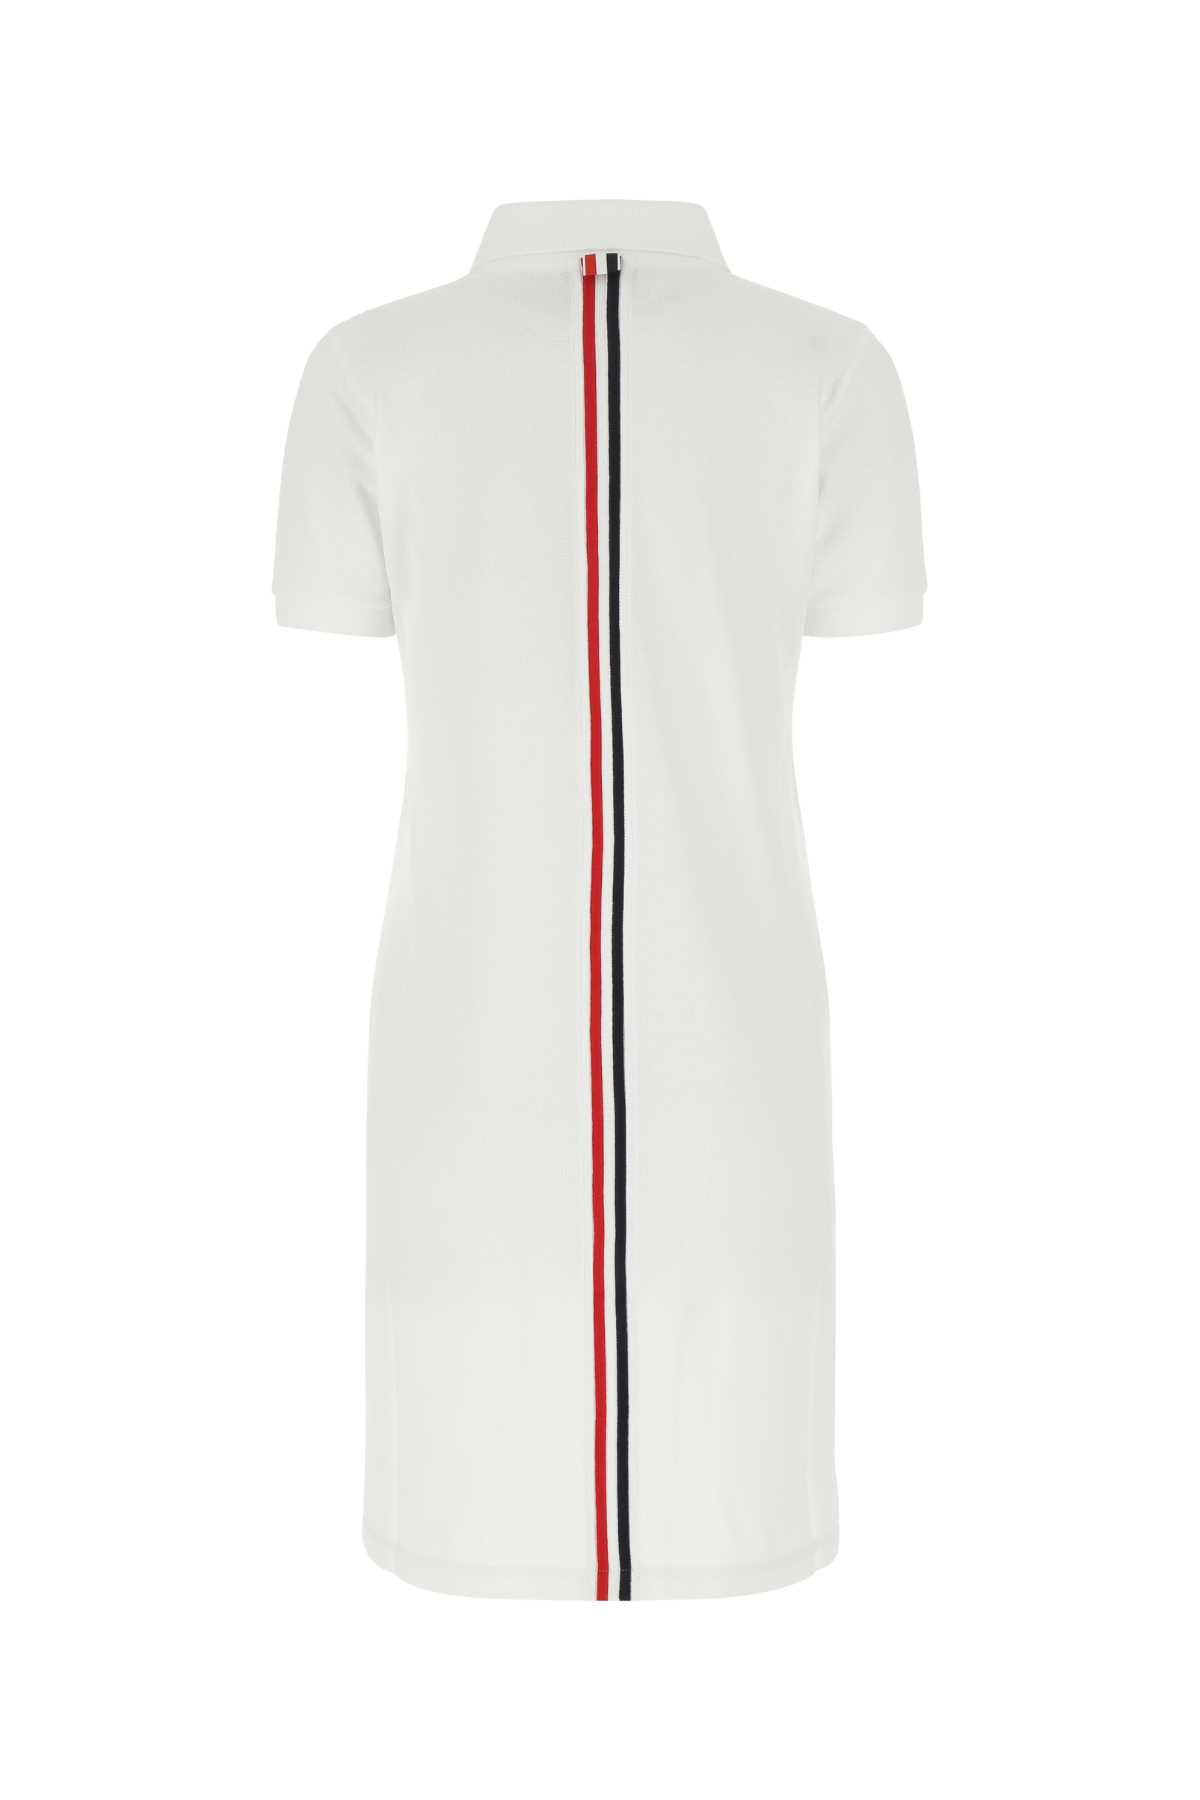 Thom Browne White Piquet Polo Shirt Dress In 100